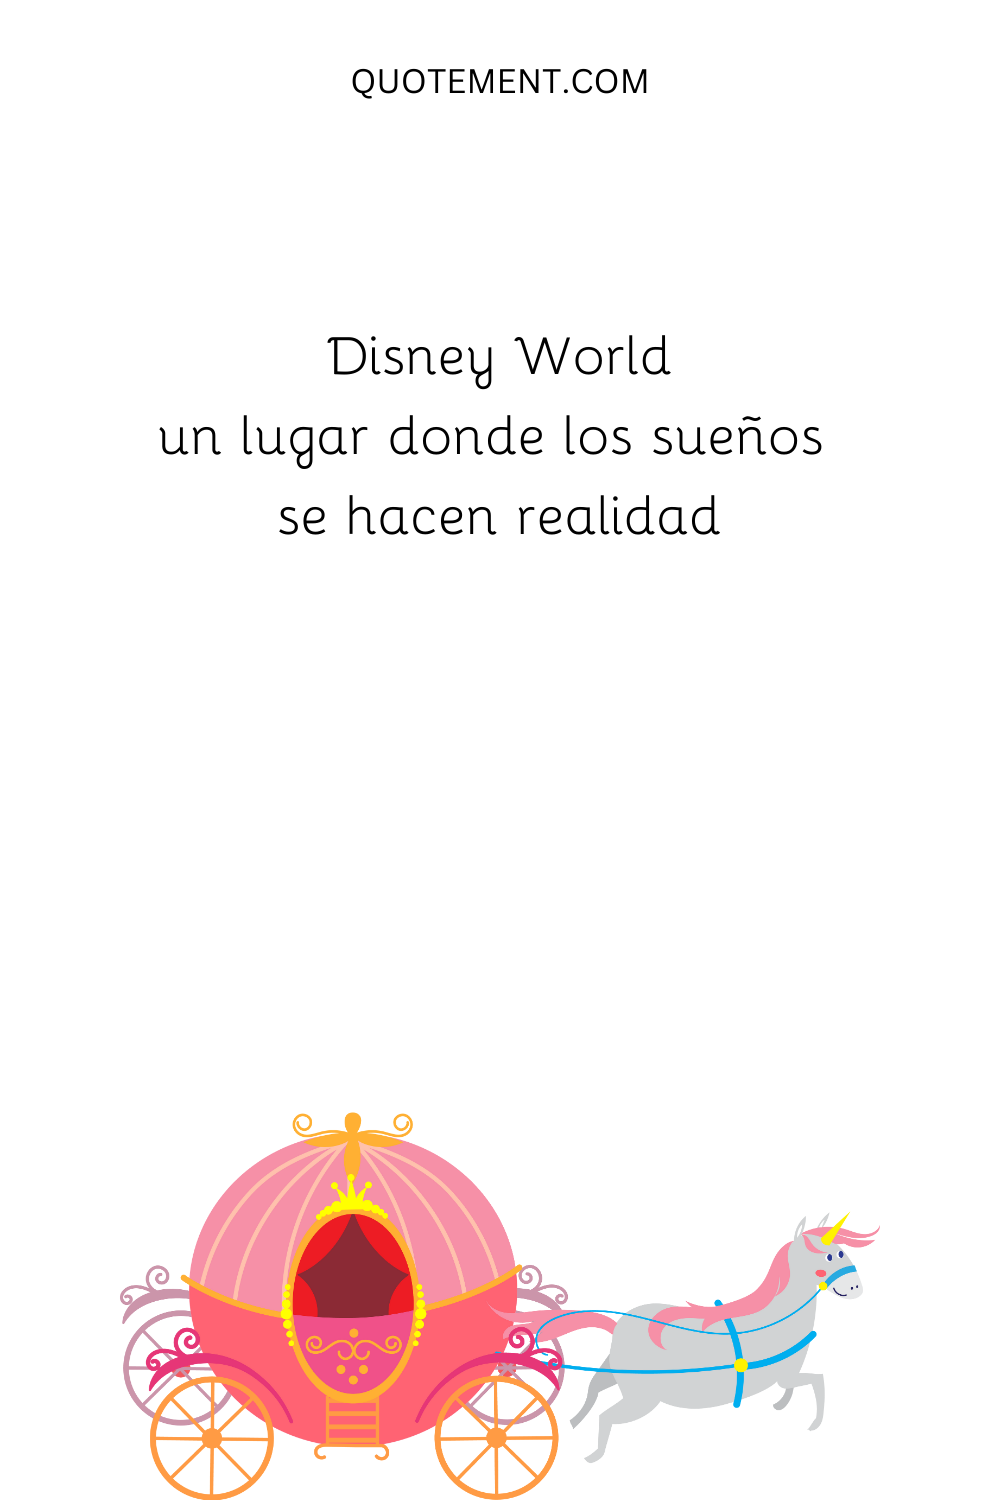 Disney World, ¡un lugar donde los sueños se hacen realidad!